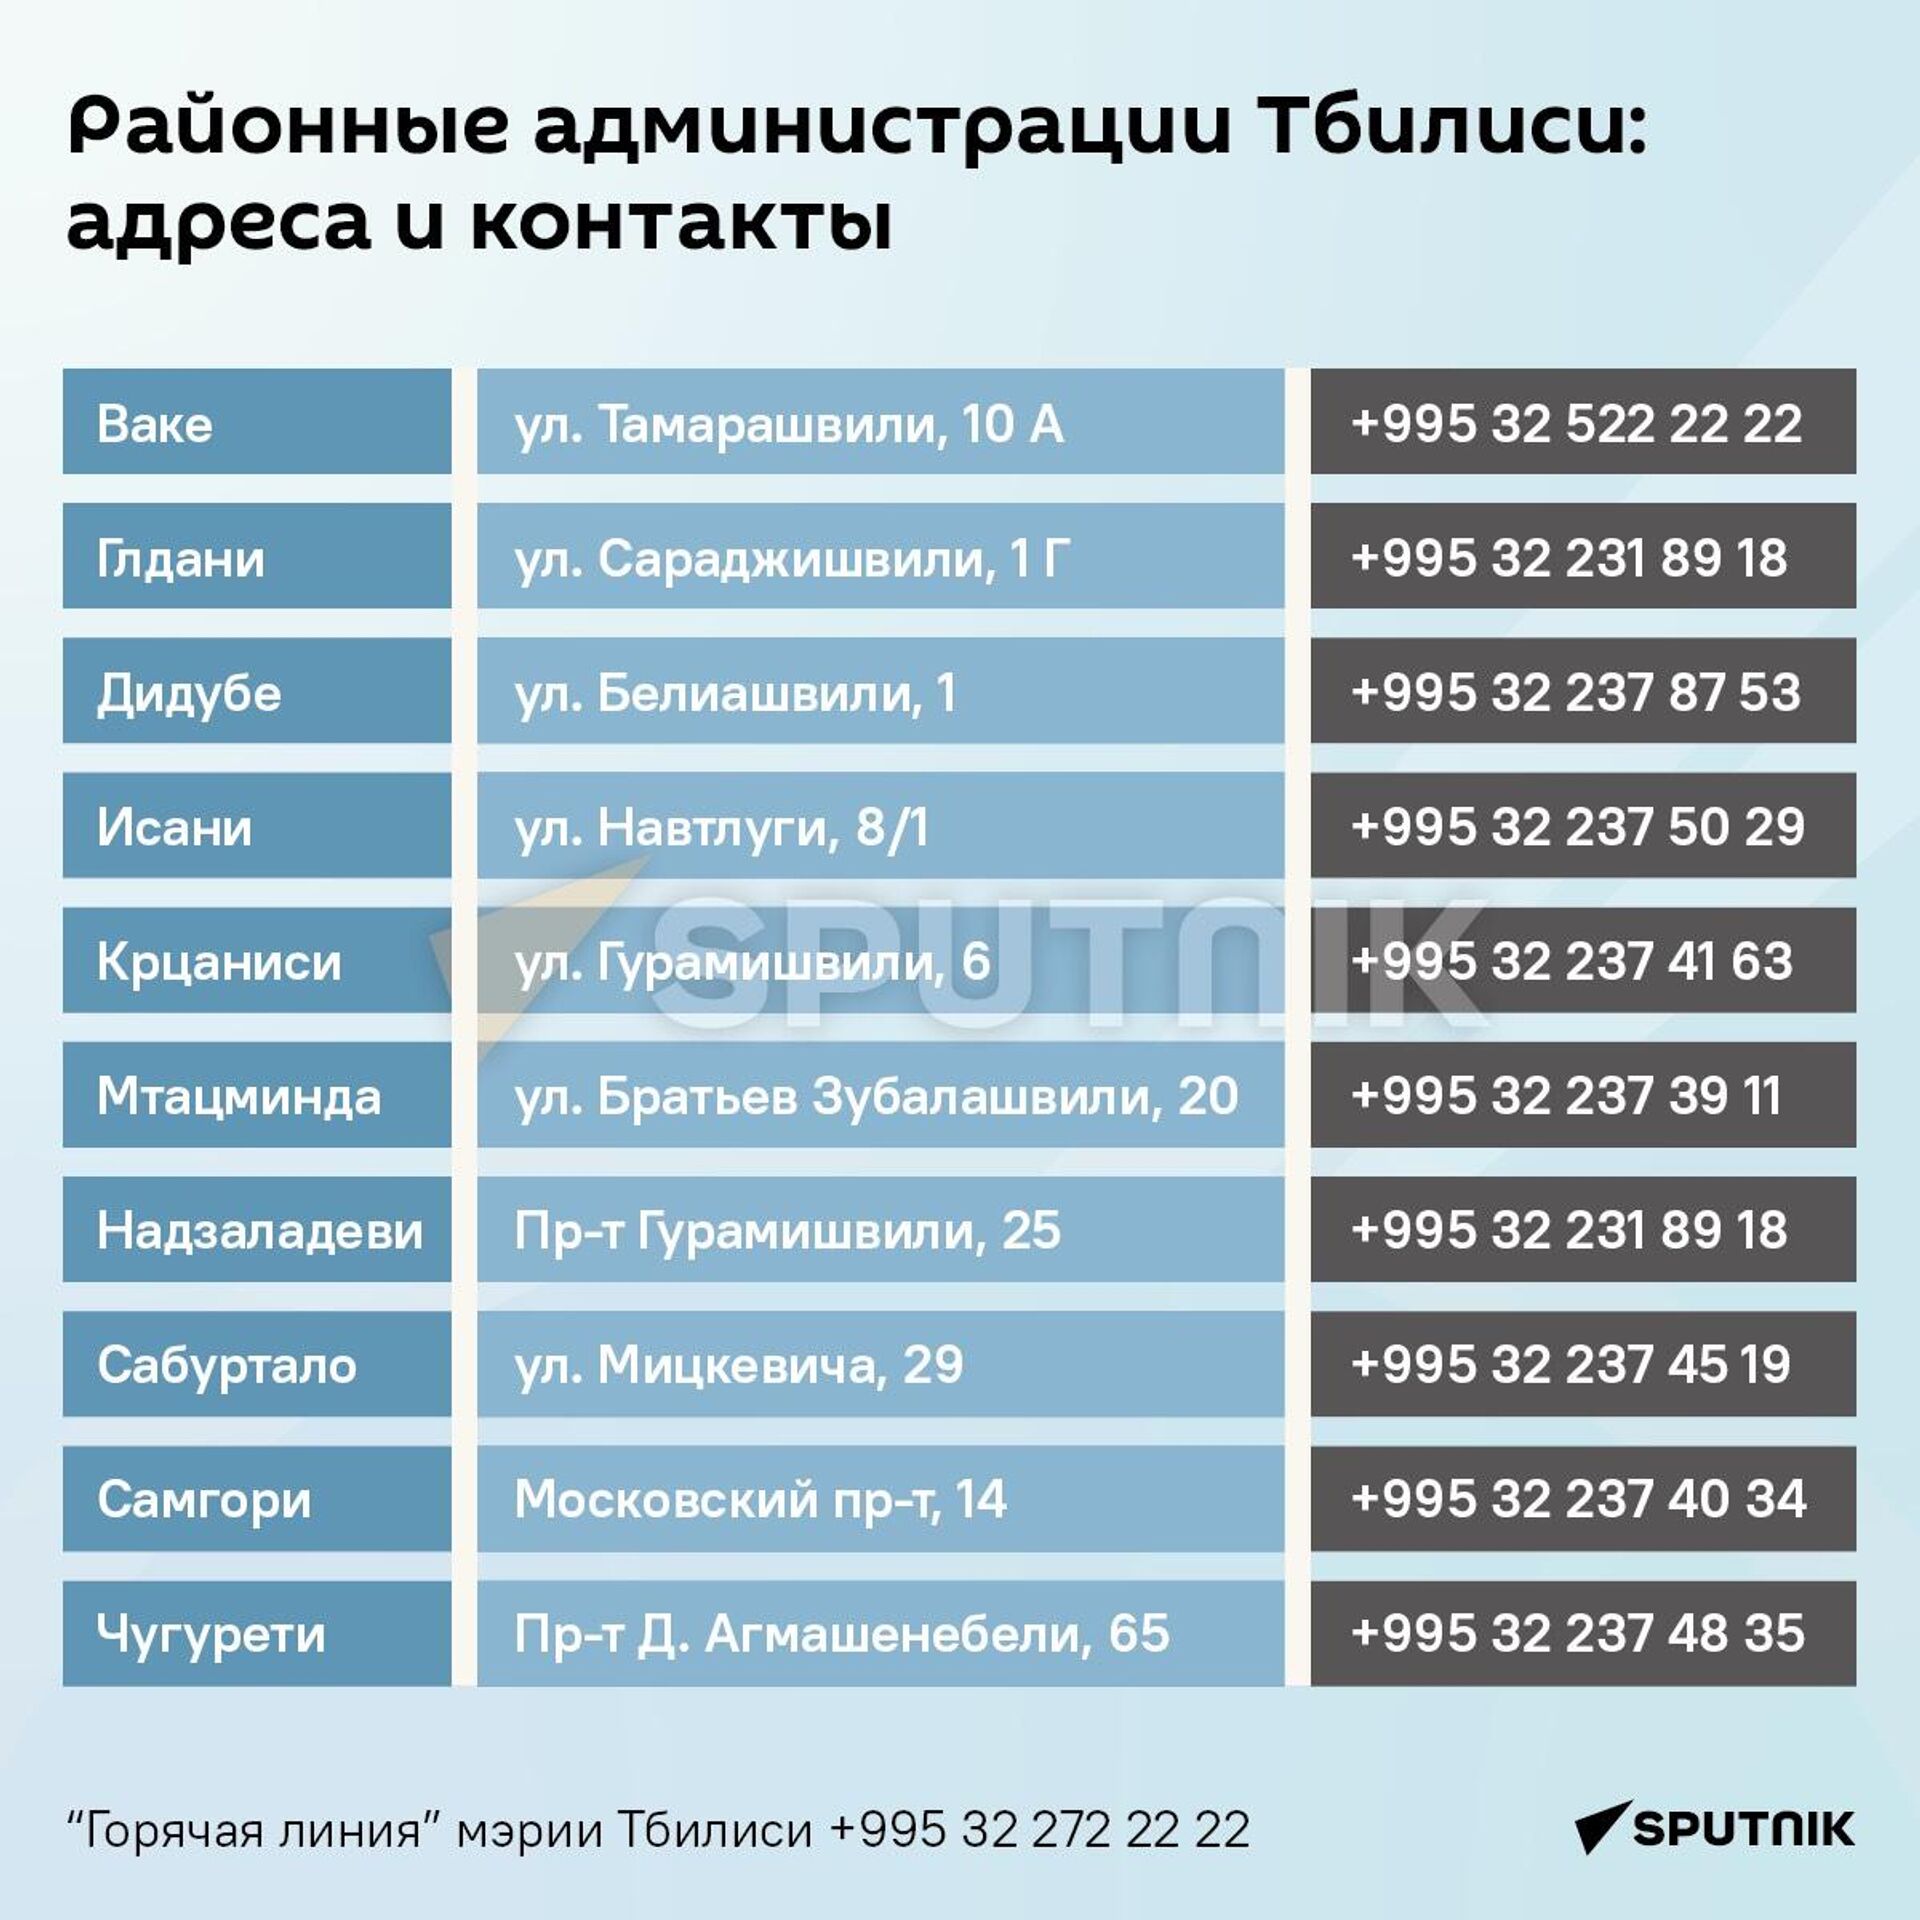 Районные администрации Тбилиси: адреса и контакты - Sputnik Грузия, 1920, 16.12.2023